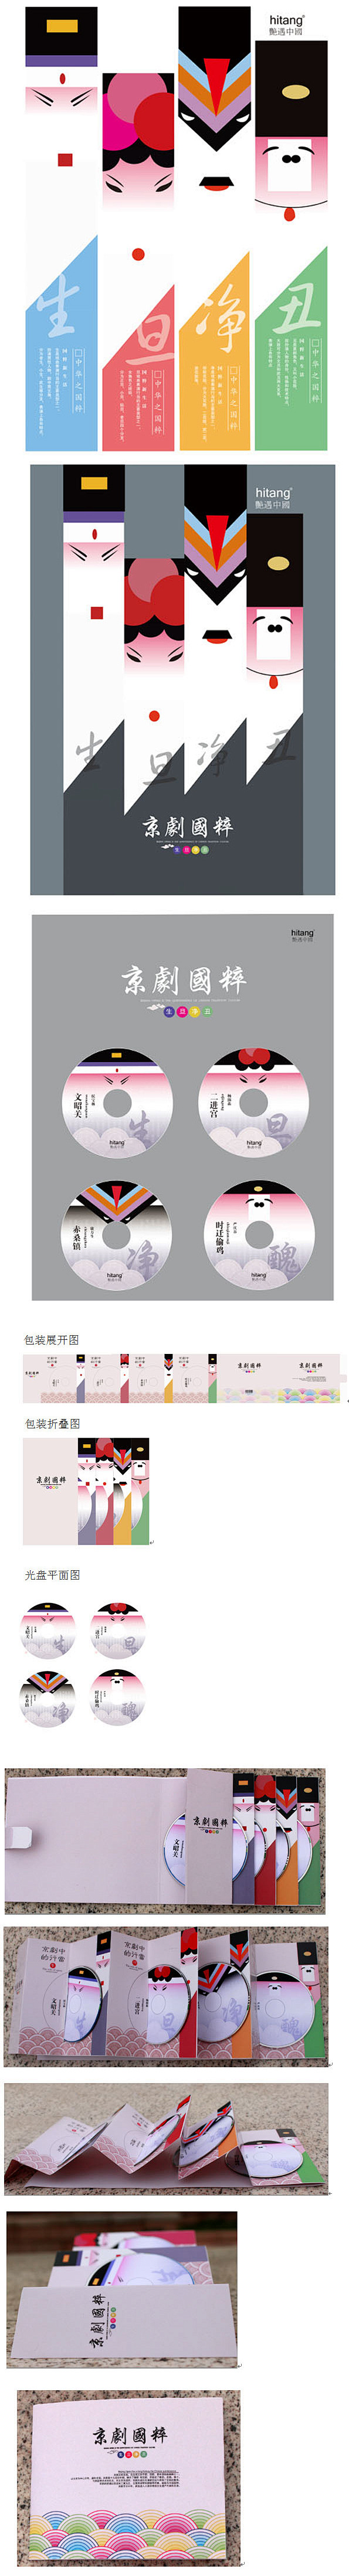 京剧CD包装设计/海报设计